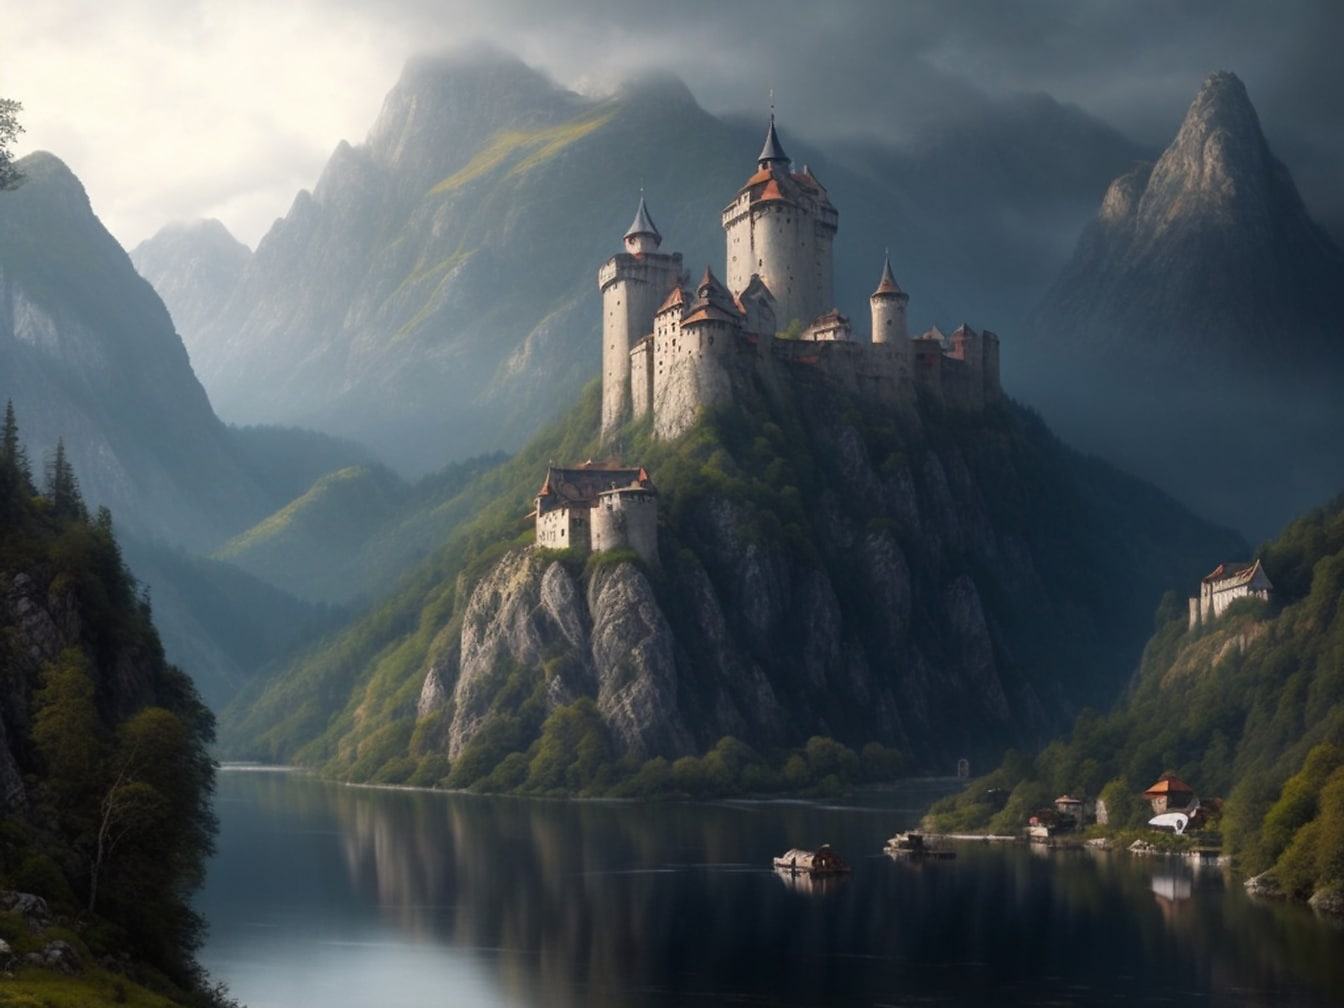 Φανταστικό μεσαιωνικό λευκό κάστρο στα βουνά δίπλα στη λίμνη